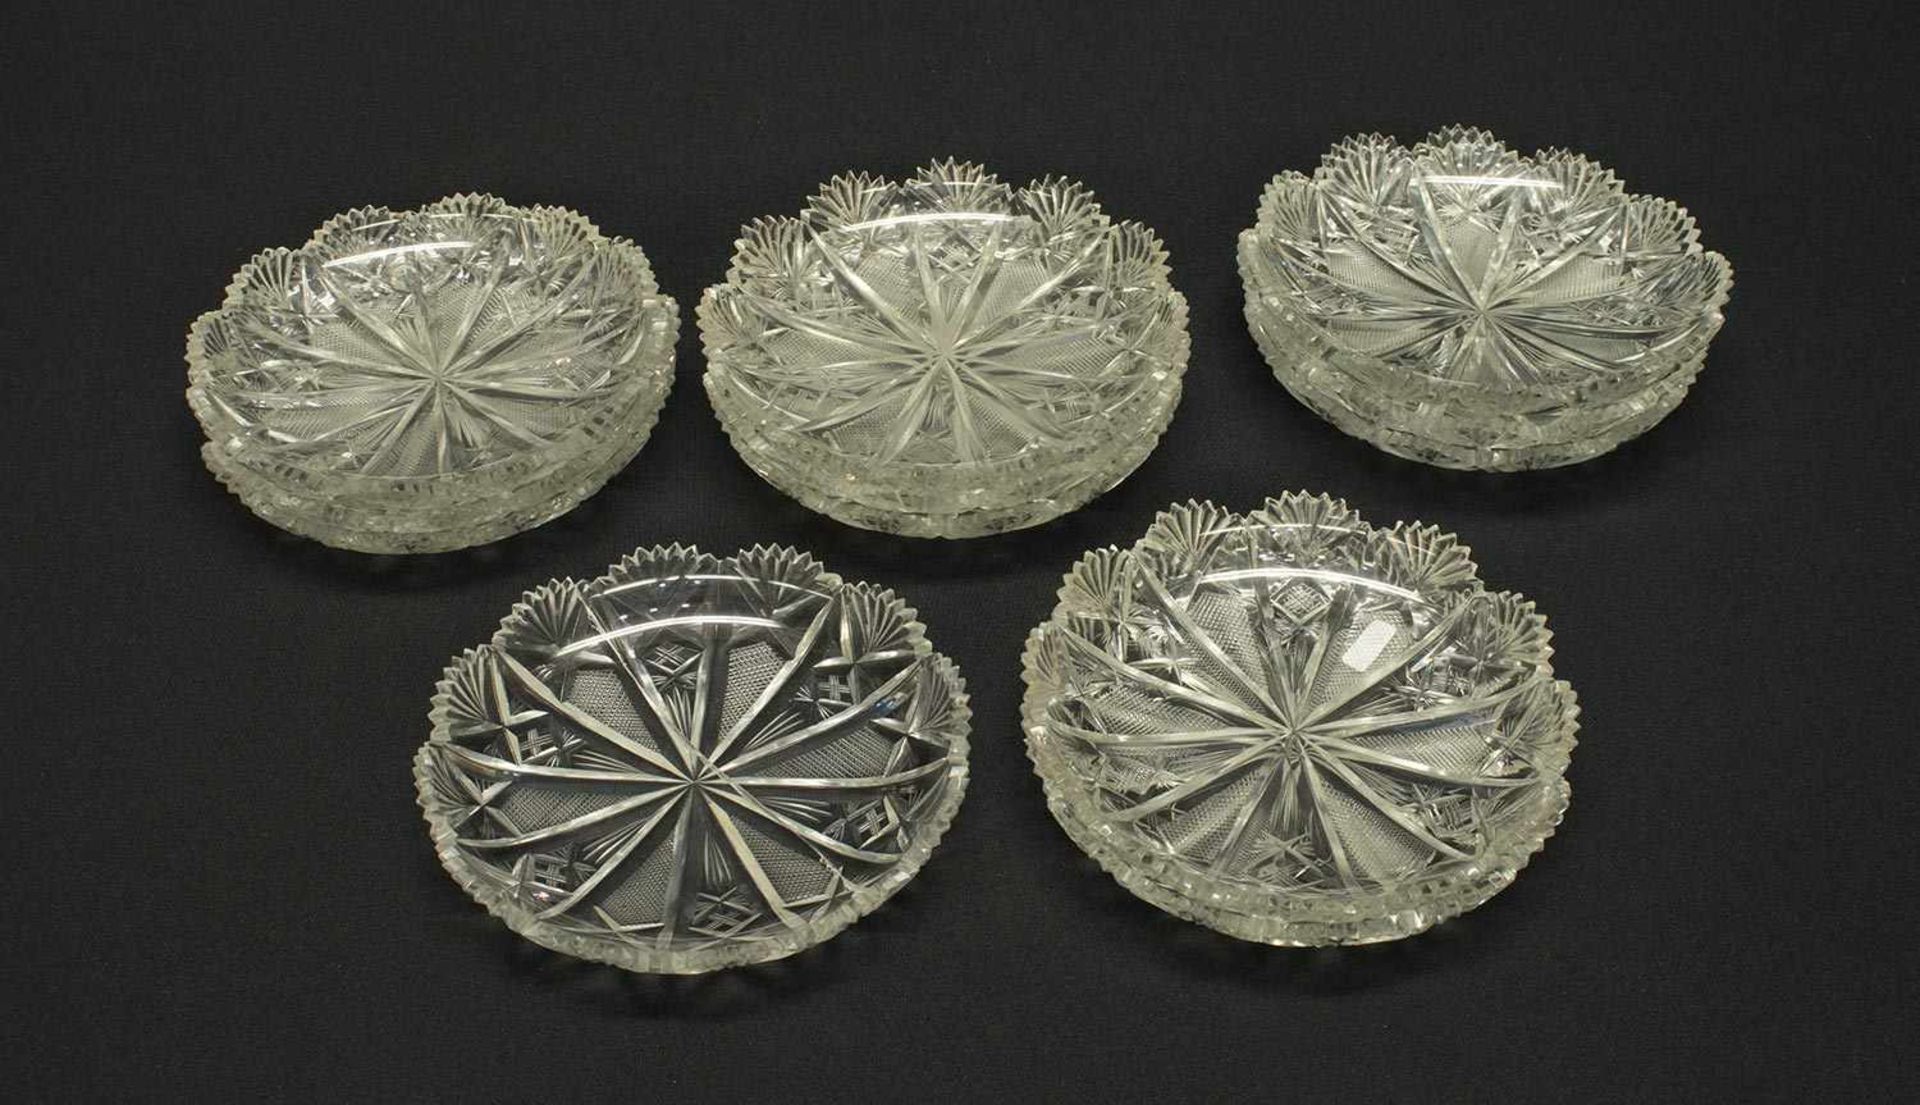 12 Desserschalen1910, Kristalglas mit Ananasschliff, D. 15,5 cm, z.T. minimal bestoßen, 1x alt.